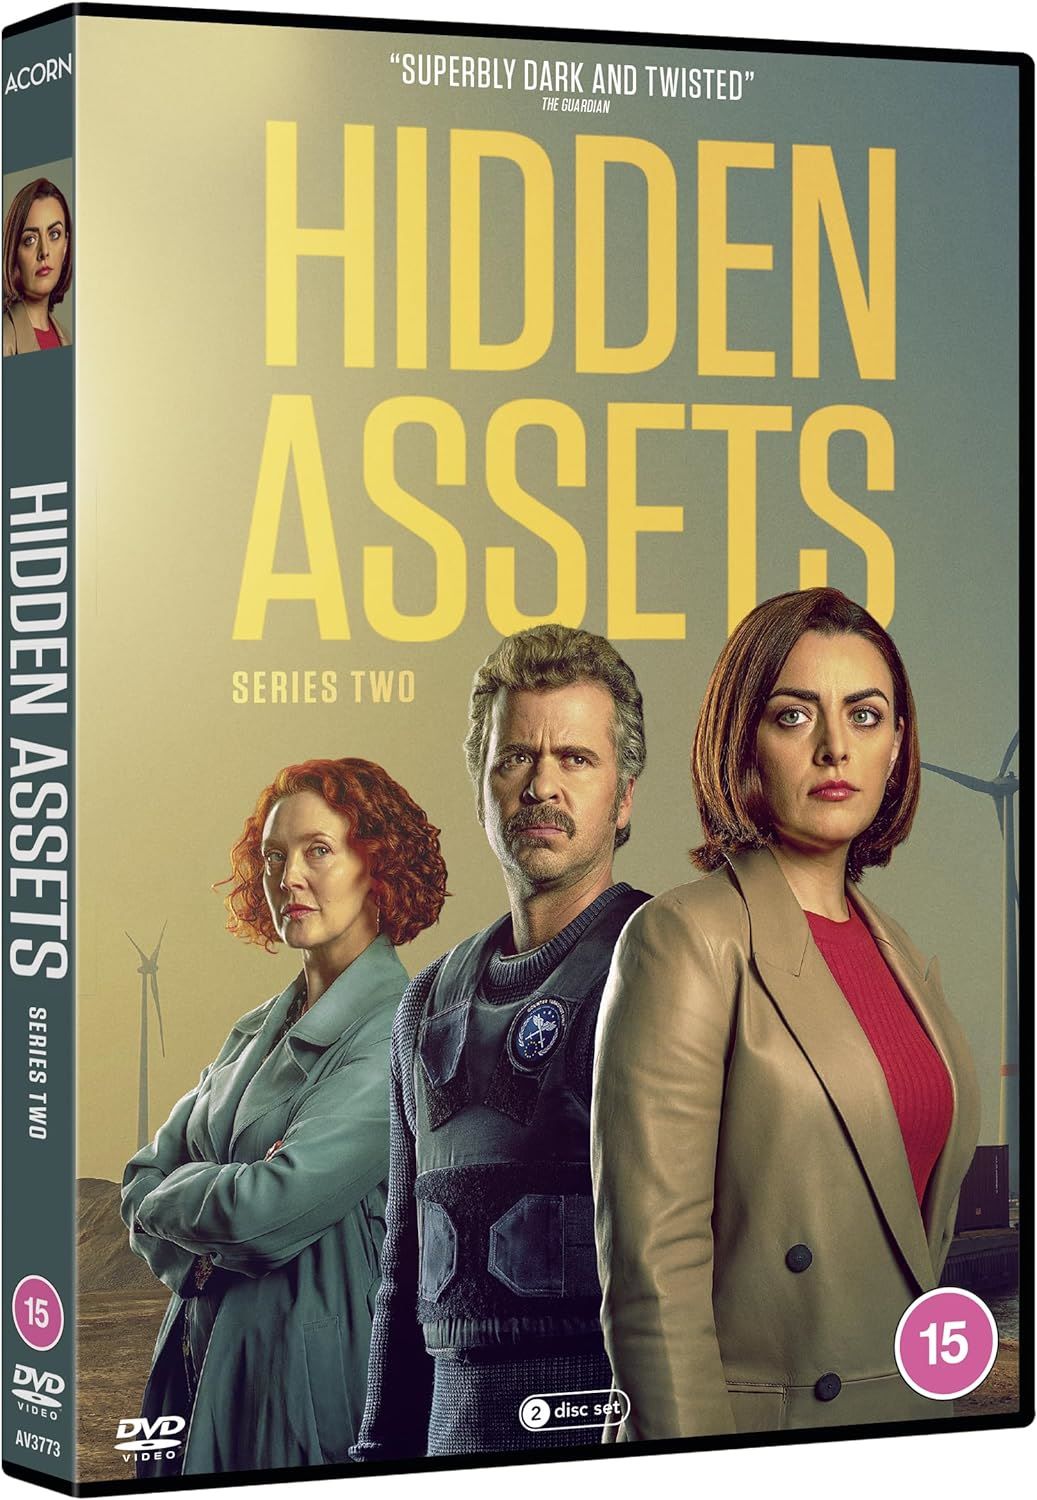 Hidden_assets_dvd_front_cover.